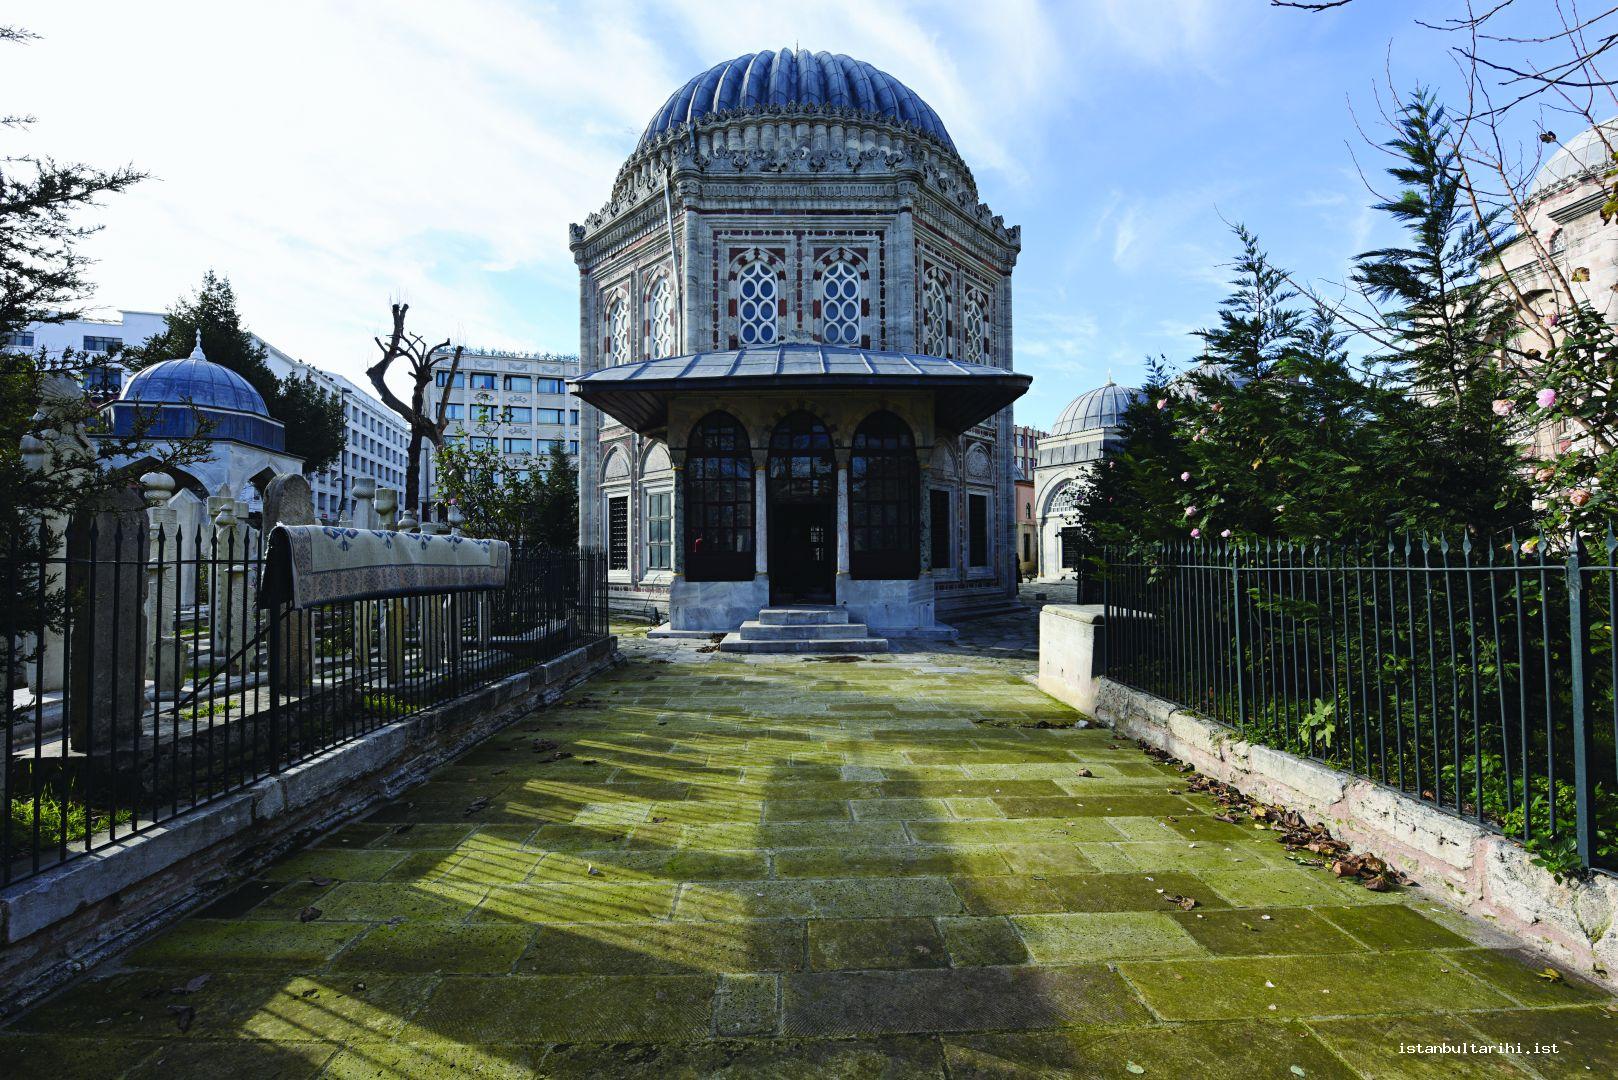 12- The tomb of Şehzade Mehmet   